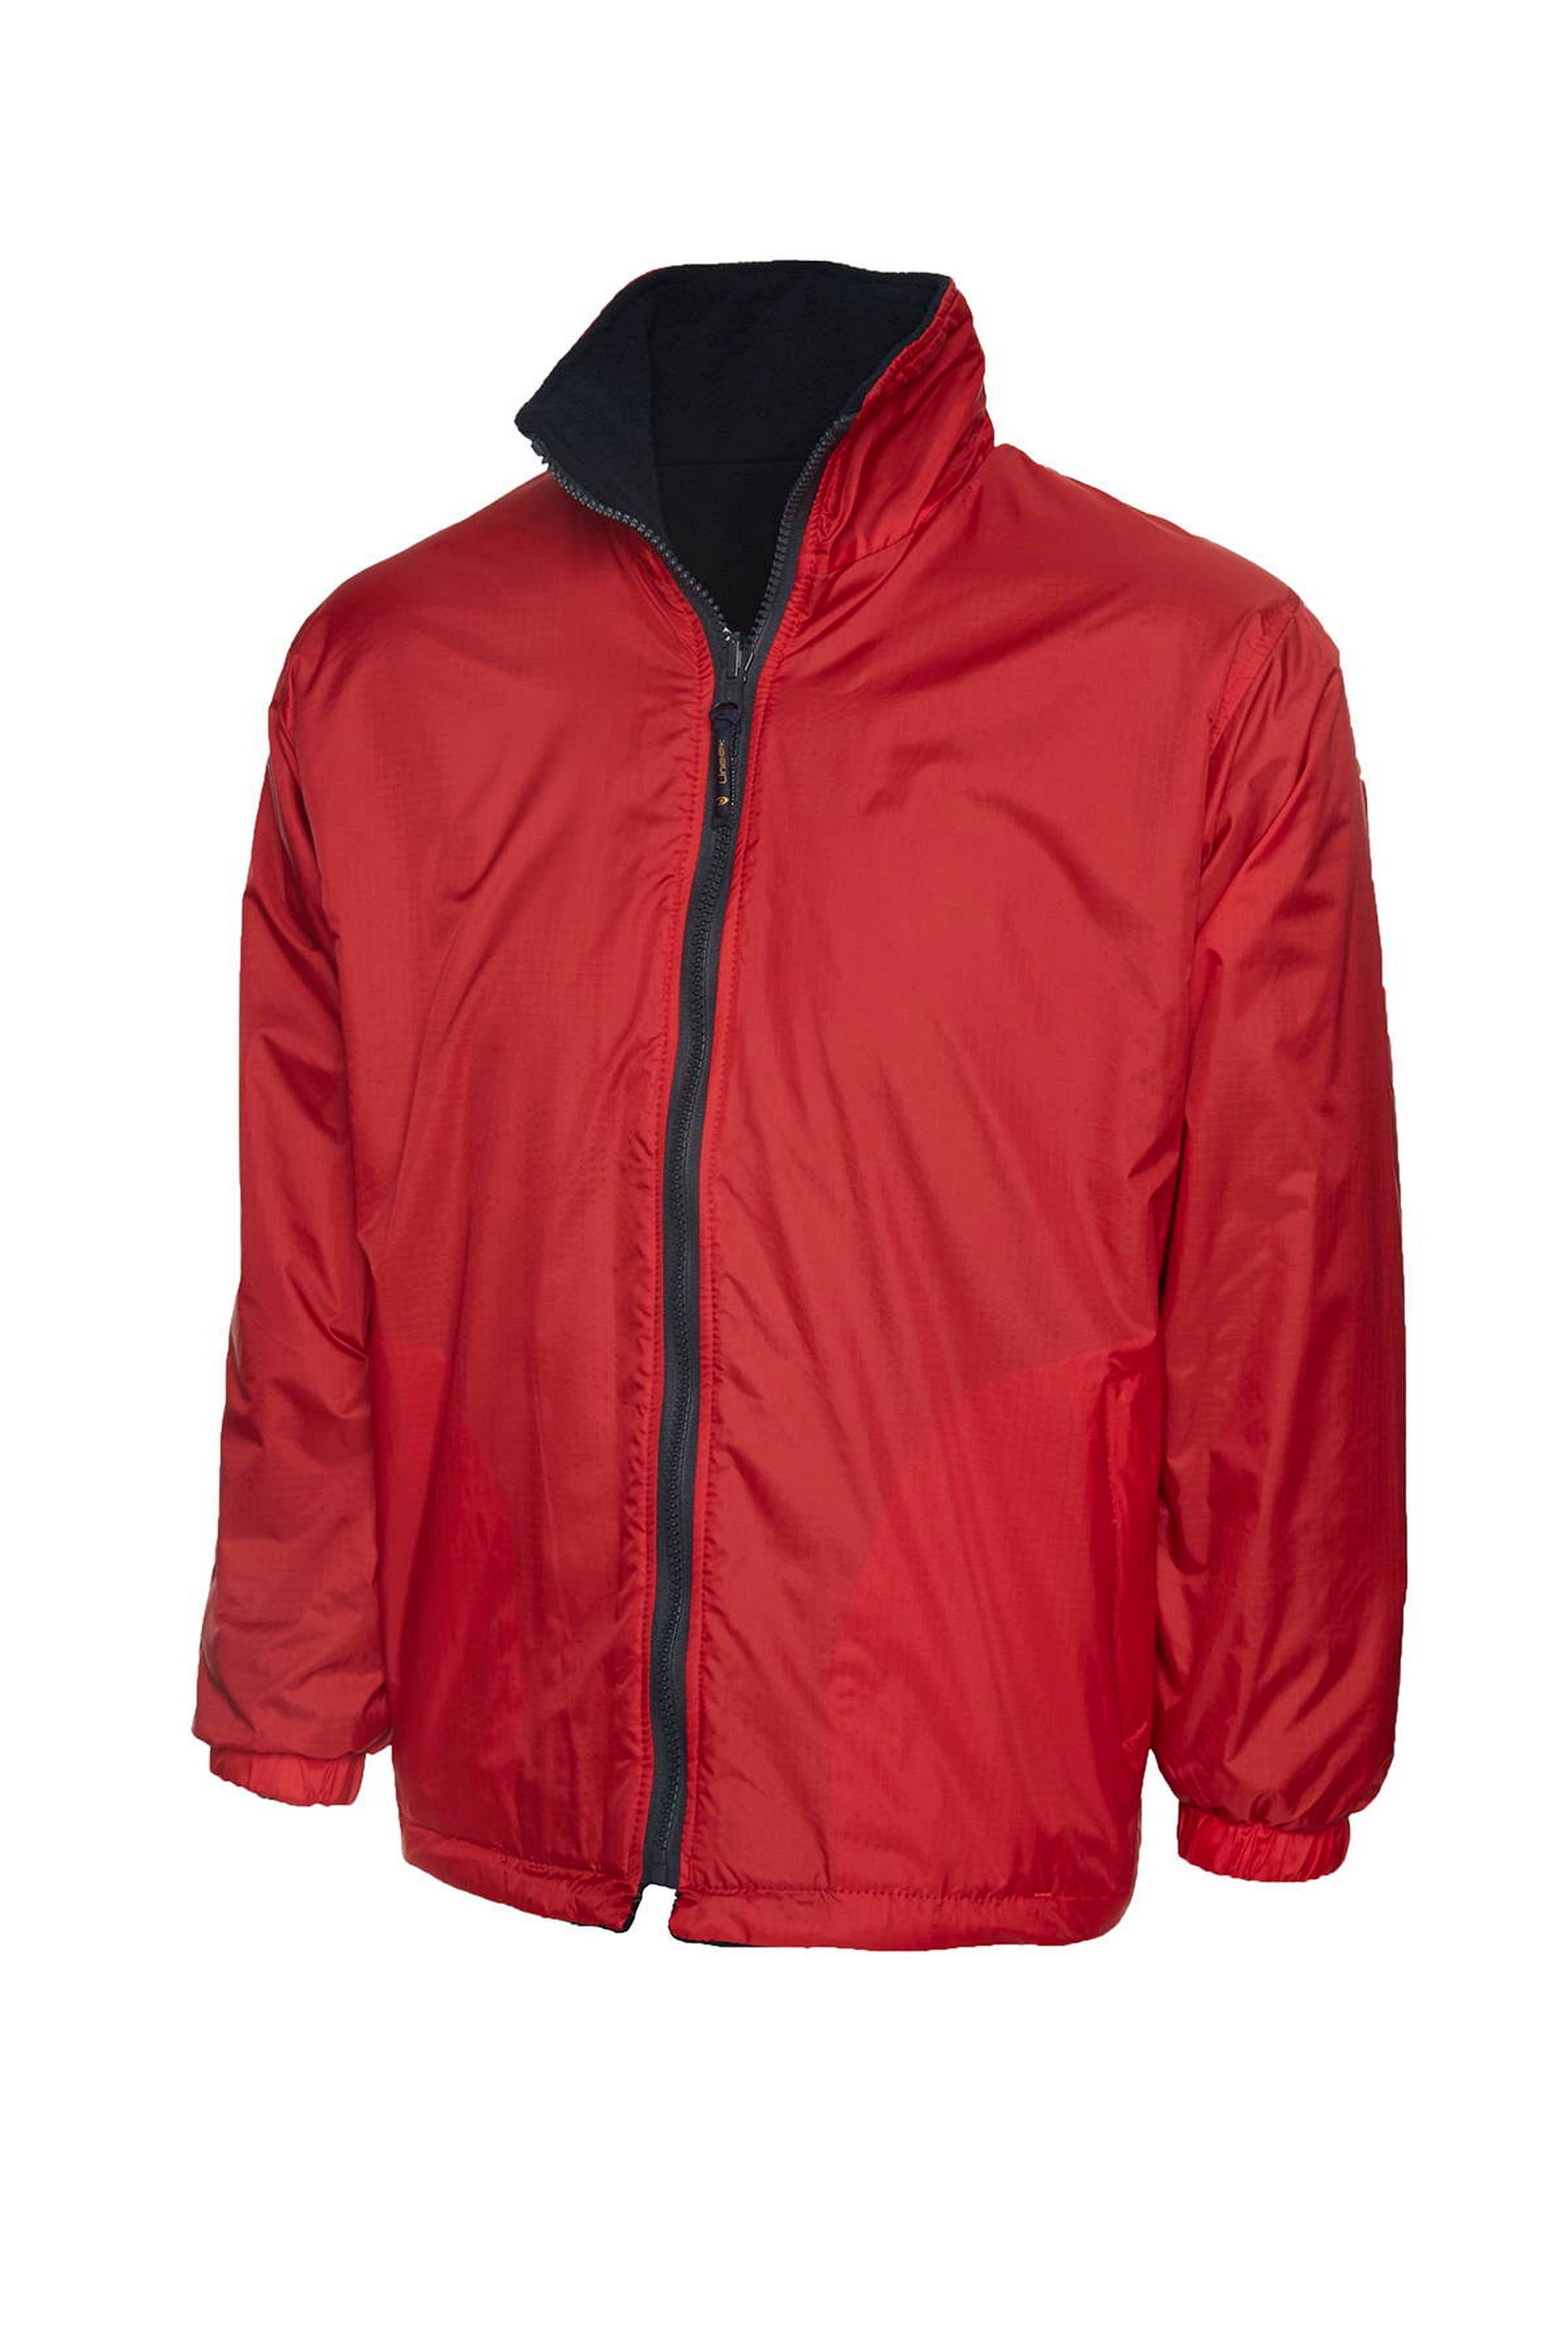 Uneek Childrens Reversible Fleece Jacket UC606 - Red/Navy